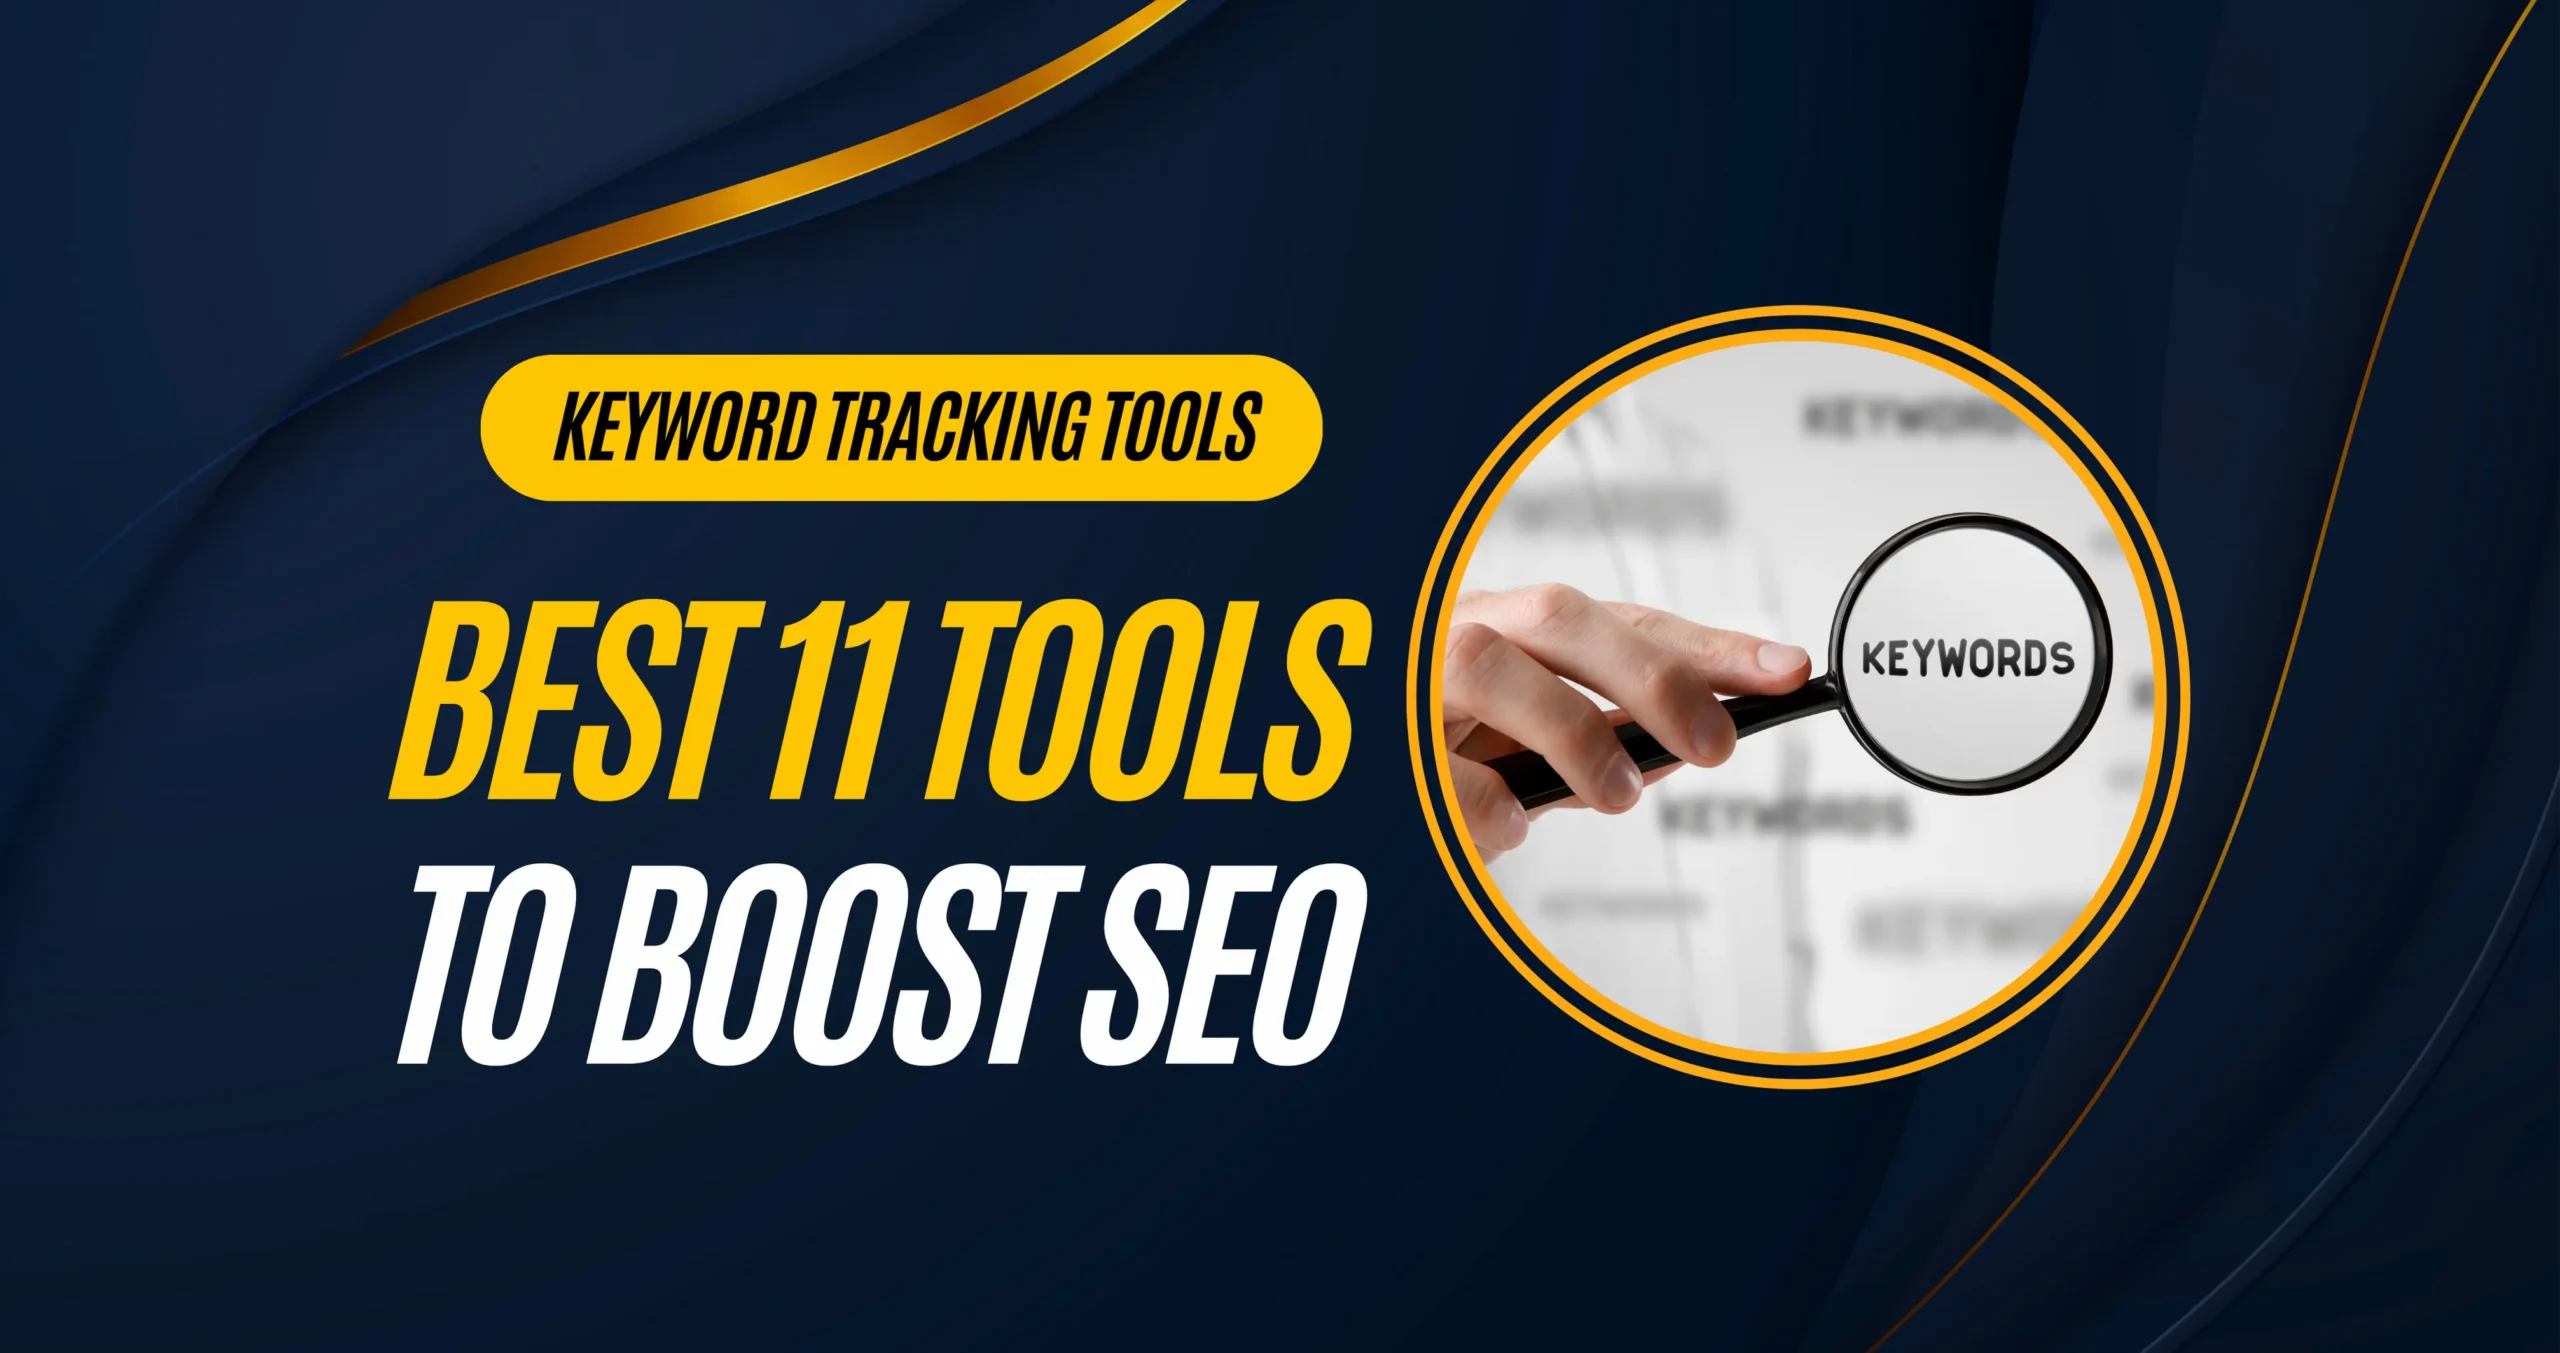 keyword tracking tools | TechnoVlogs